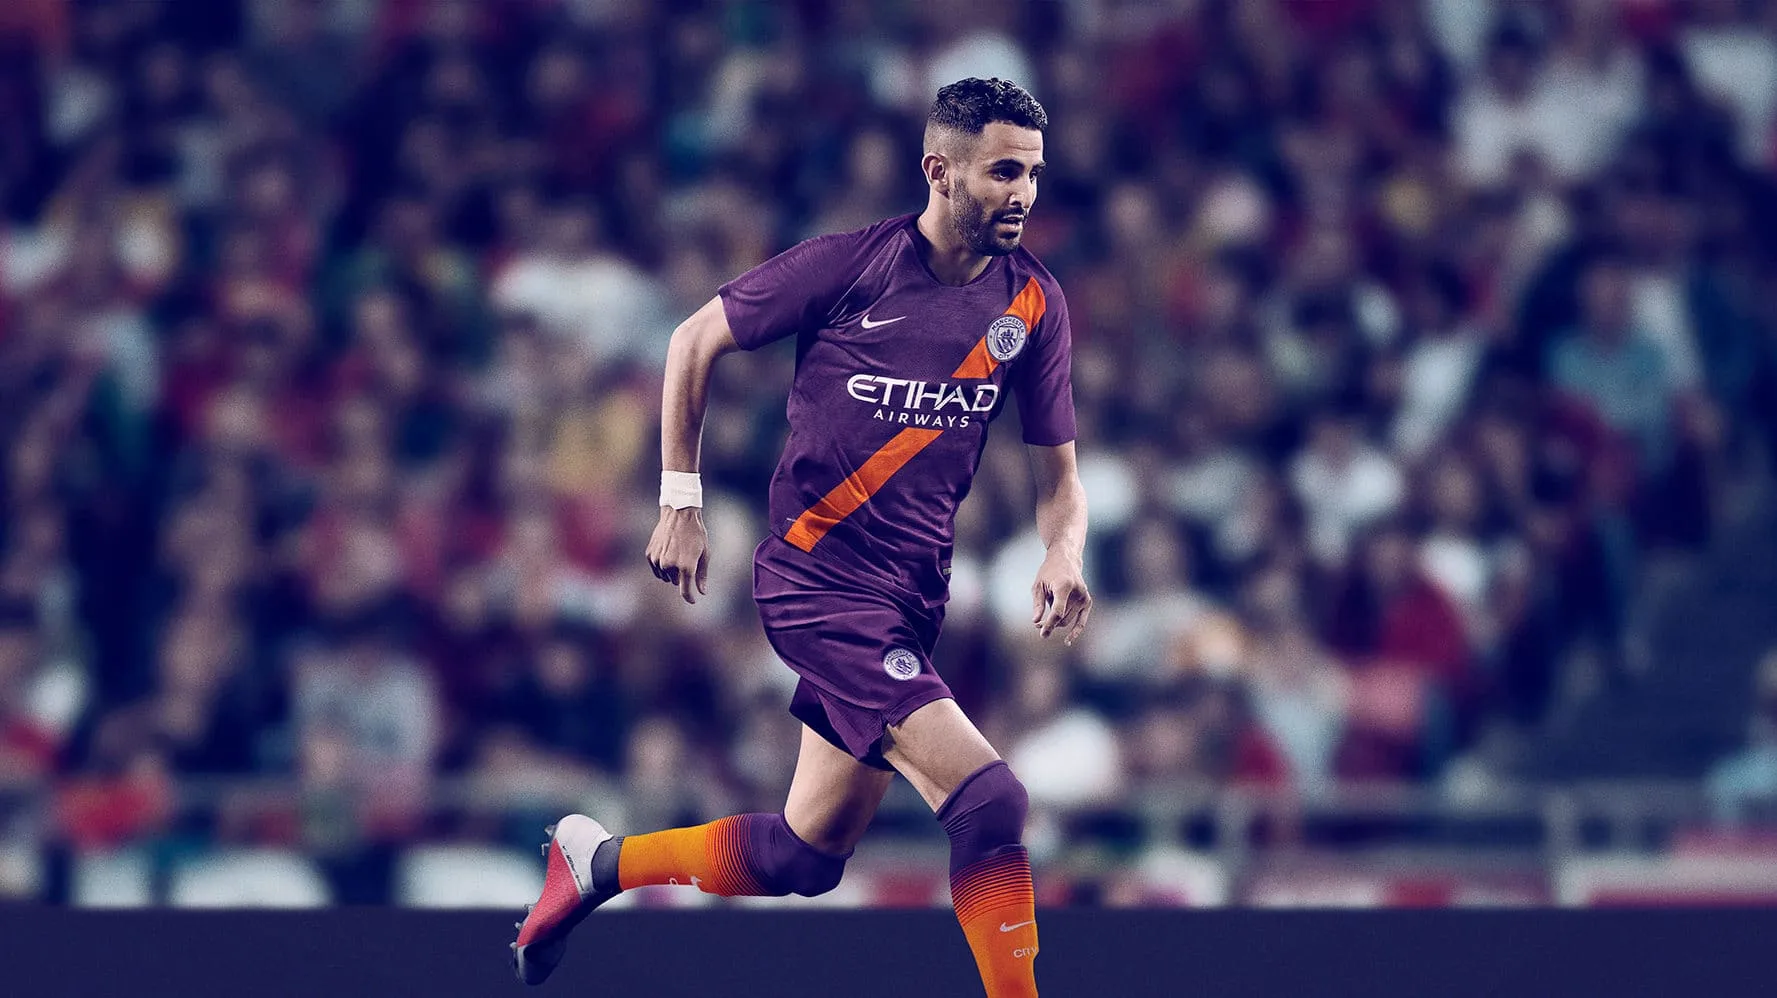 Manchester City third kit 2018/19 - Riyad Mahrez